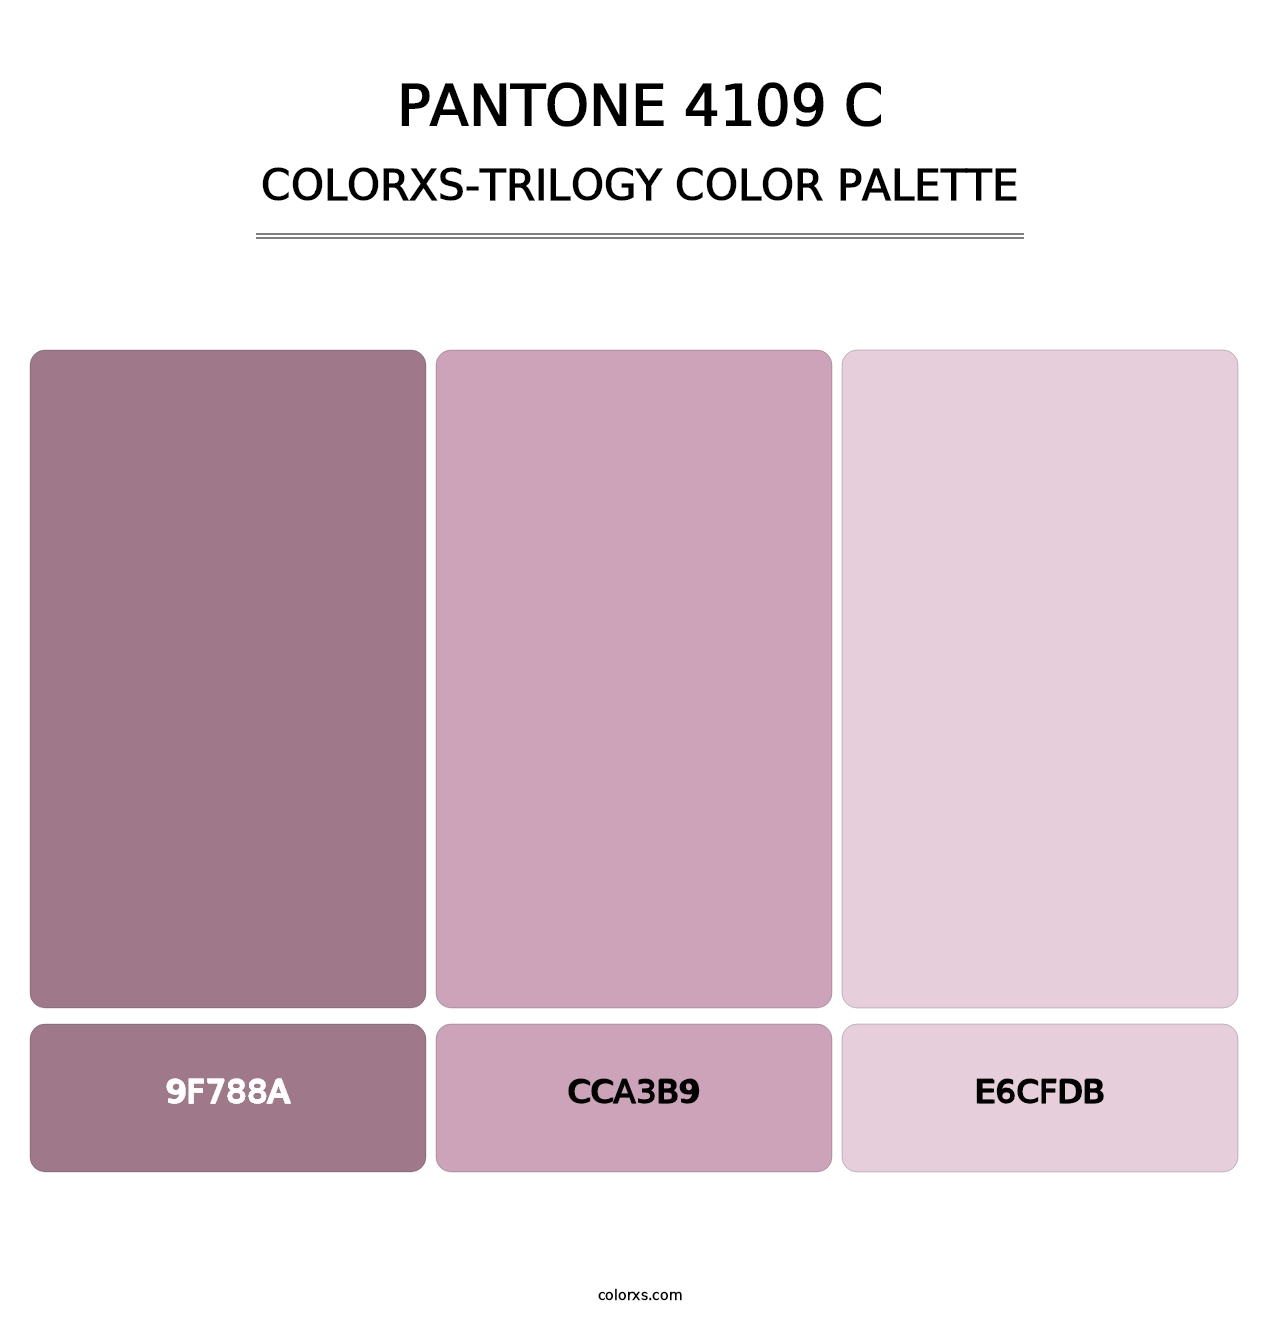 PANTONE 4109 C - Colorxs Trilogy Palette